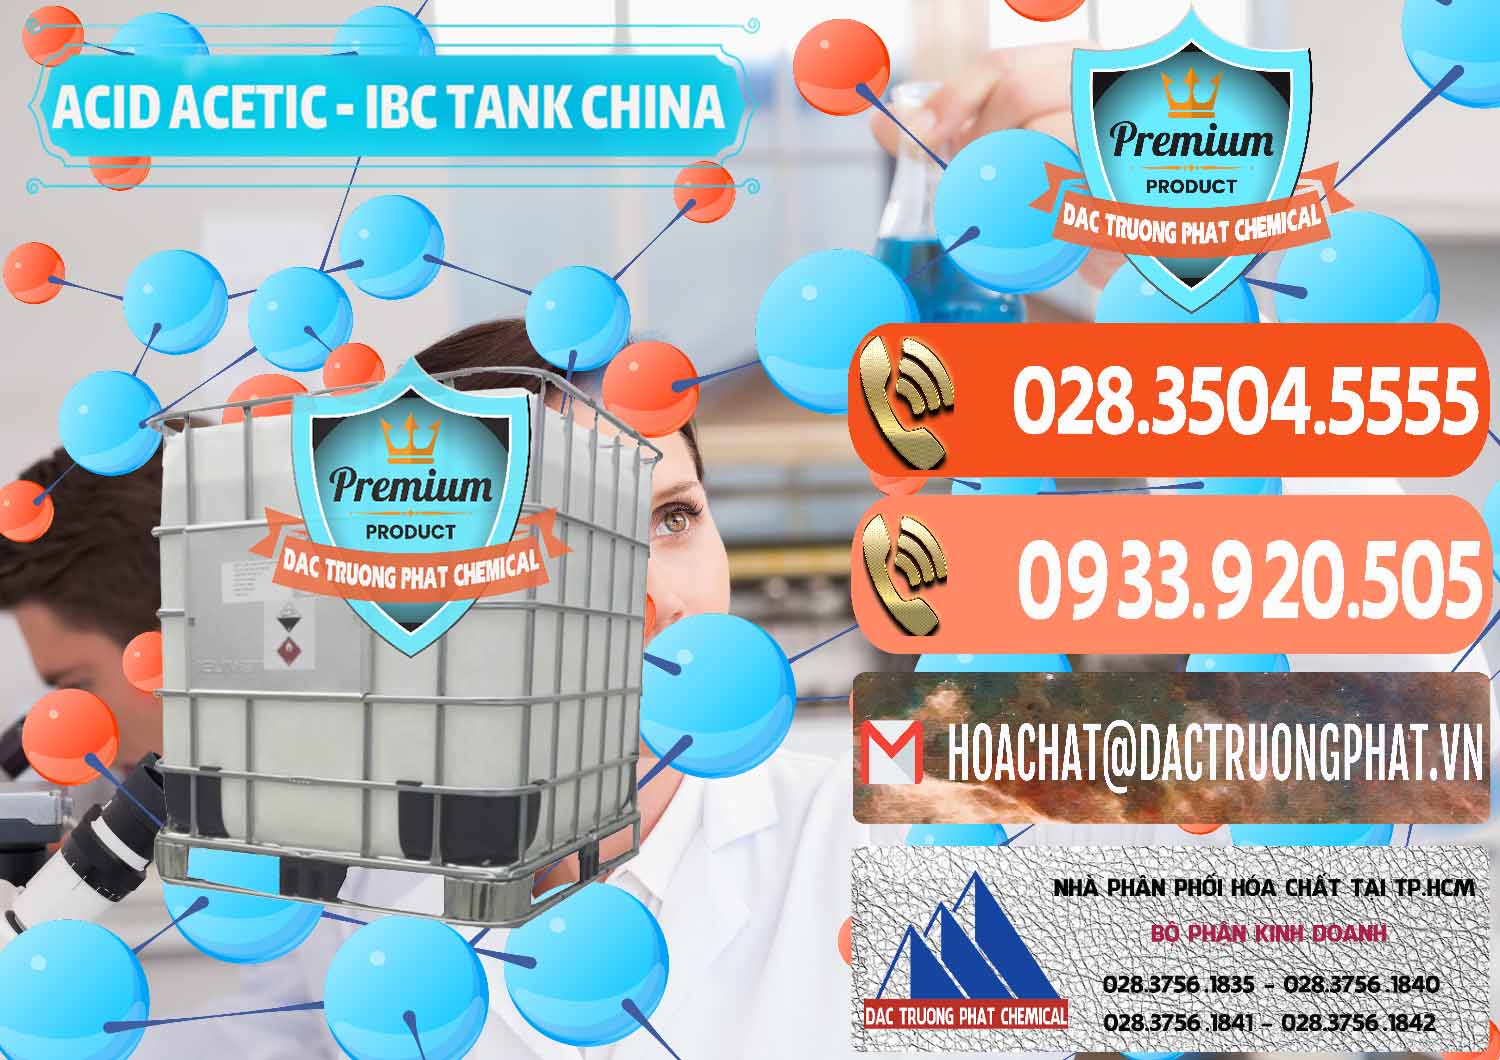 Công ty chuyên cung cấp _ bán Acetic Acid – Axit Acetic Tank Bồn IBC Trung Quốc China - 0443 - Nhà cung cấp và bán hóa chất tại TP.HCM - hoachatmientay.com